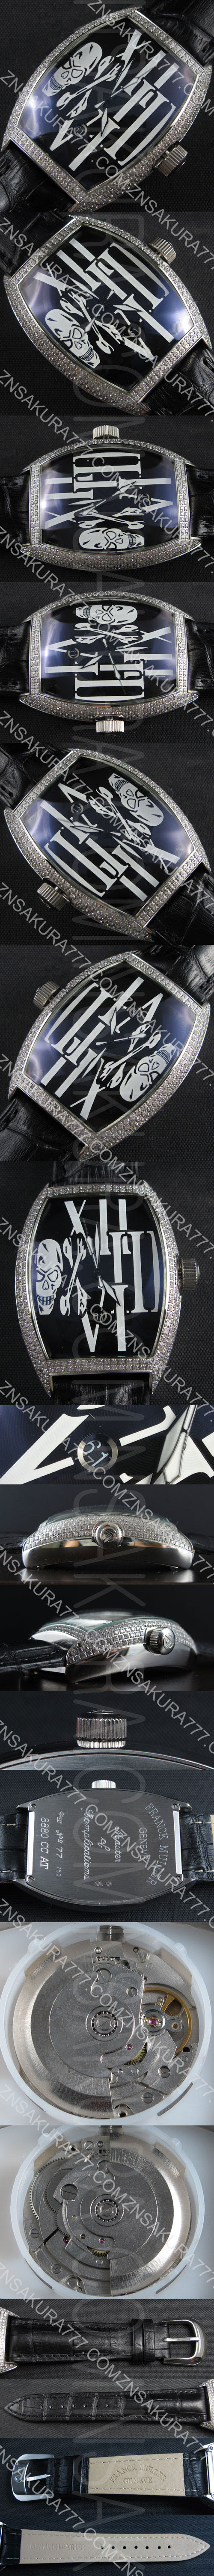 高級感腕時計フランクミュラー マスター コンプリケーション(ダークブルー文字盤ホワイトドクロ印刷)